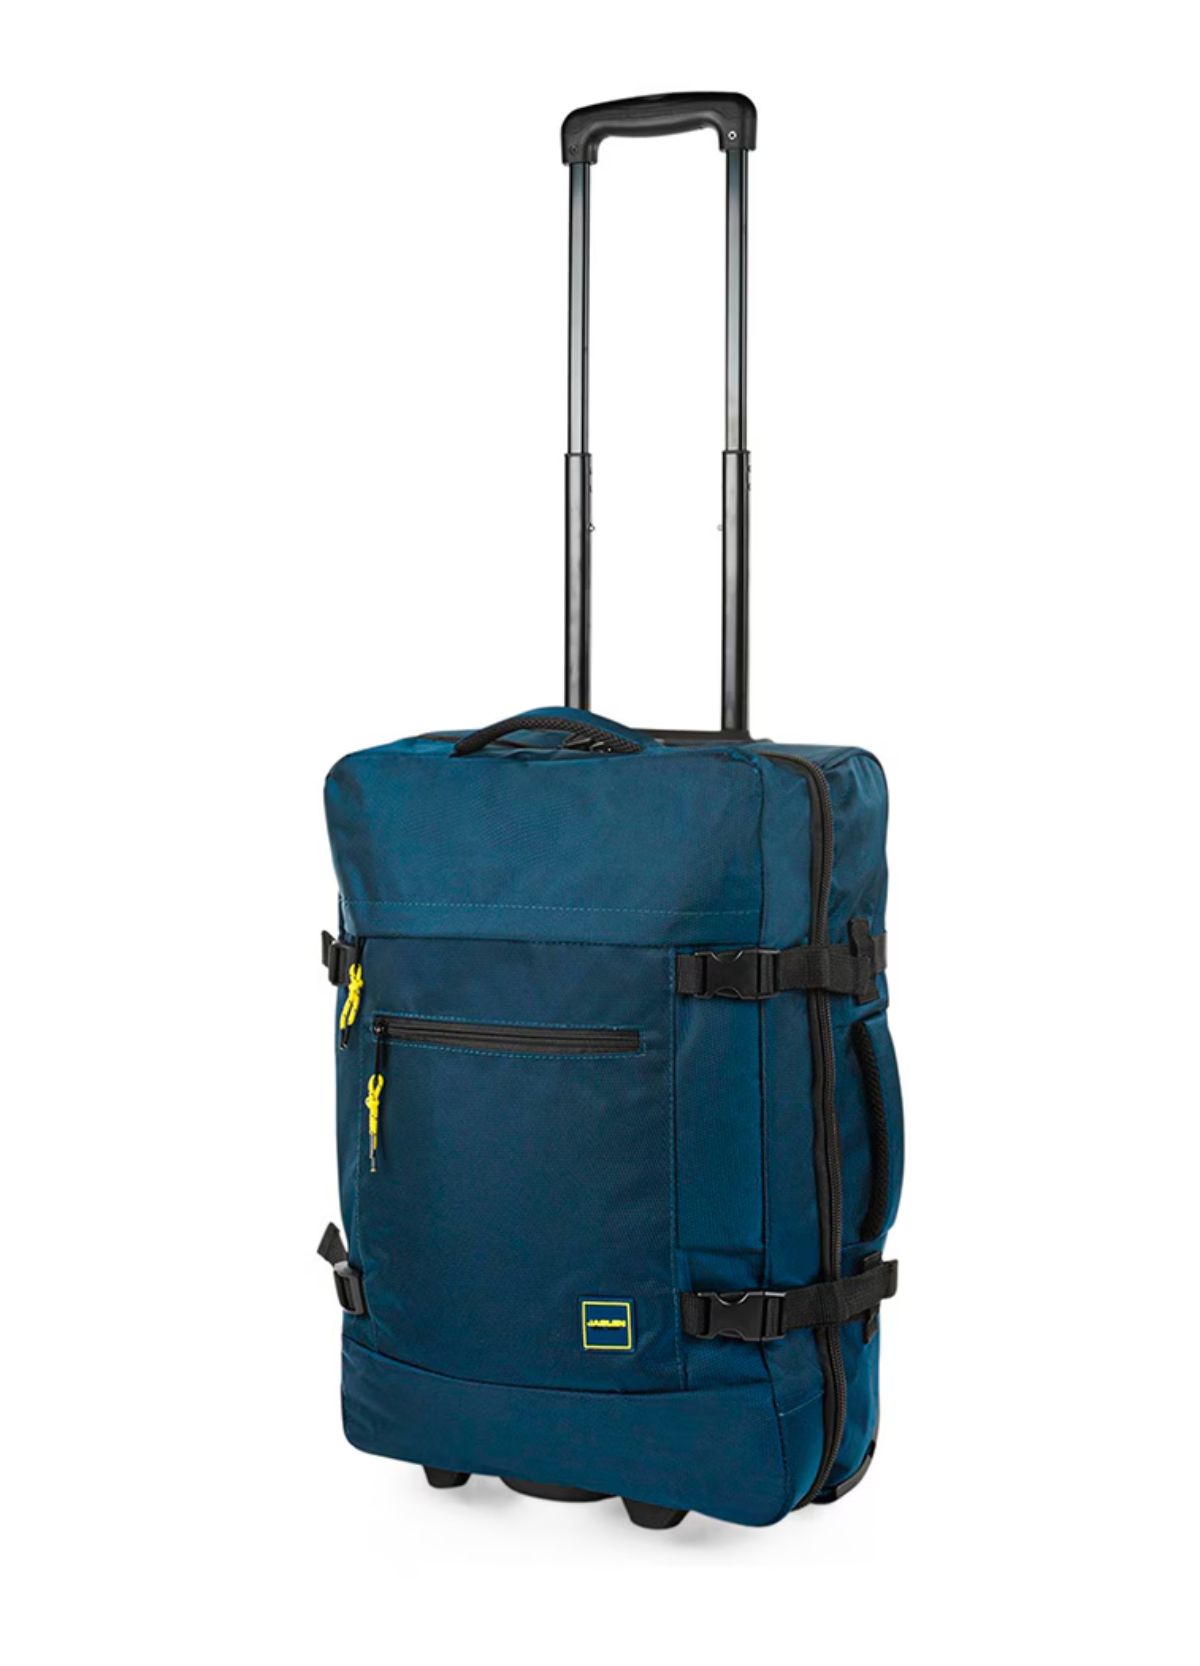 Esta maleta blanda es perfecta y cumple con las medidas para viajar en cabina.